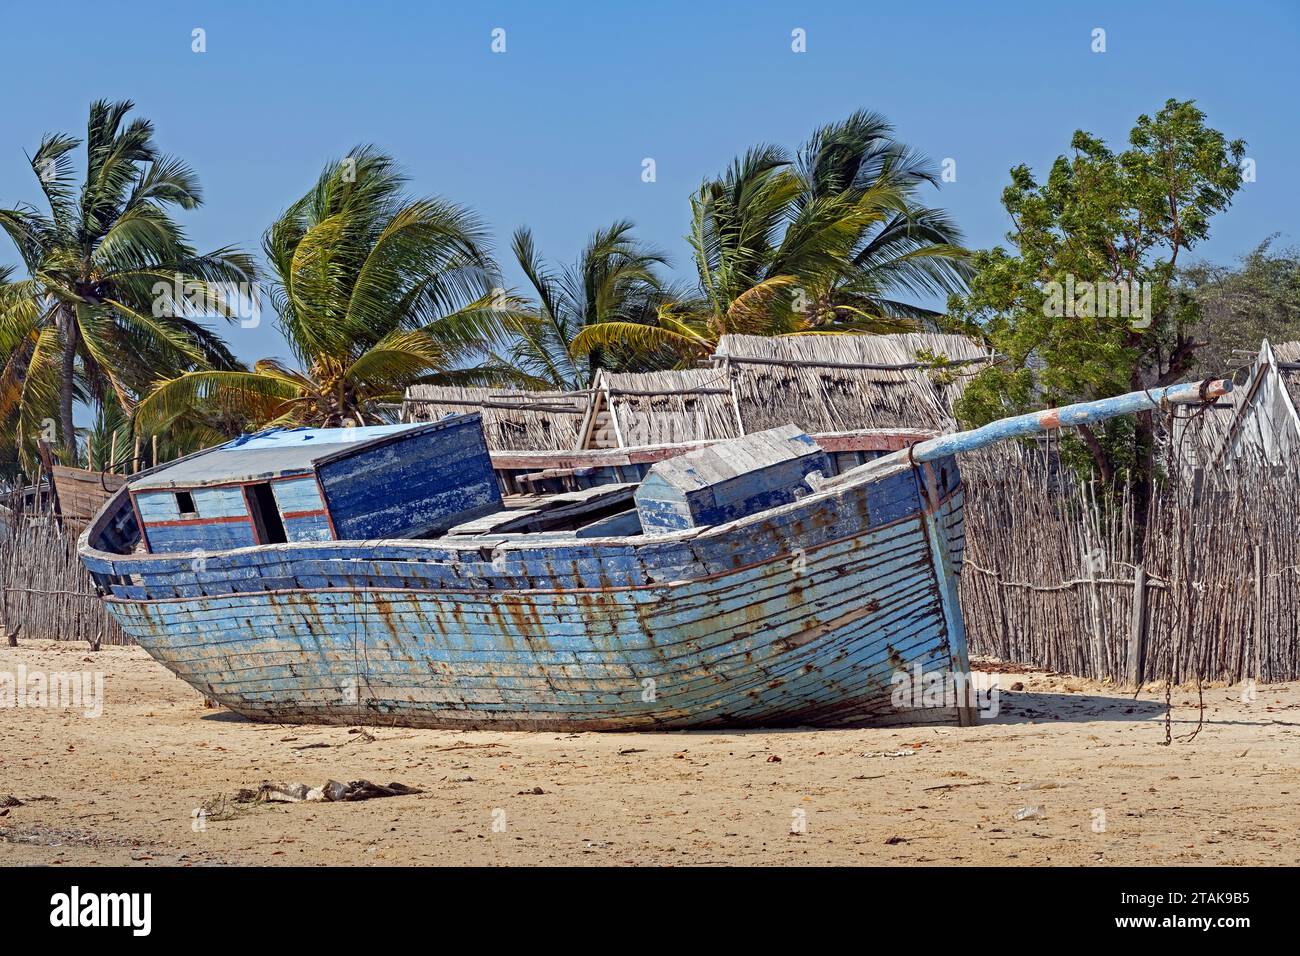 Vecchio peschereccio di legno blu sulla spiaggia sabbiosa del villaggio costiero di Belo sur Mer, distretto di Morondava, regione di Menabe, Madagascar Foto Stock